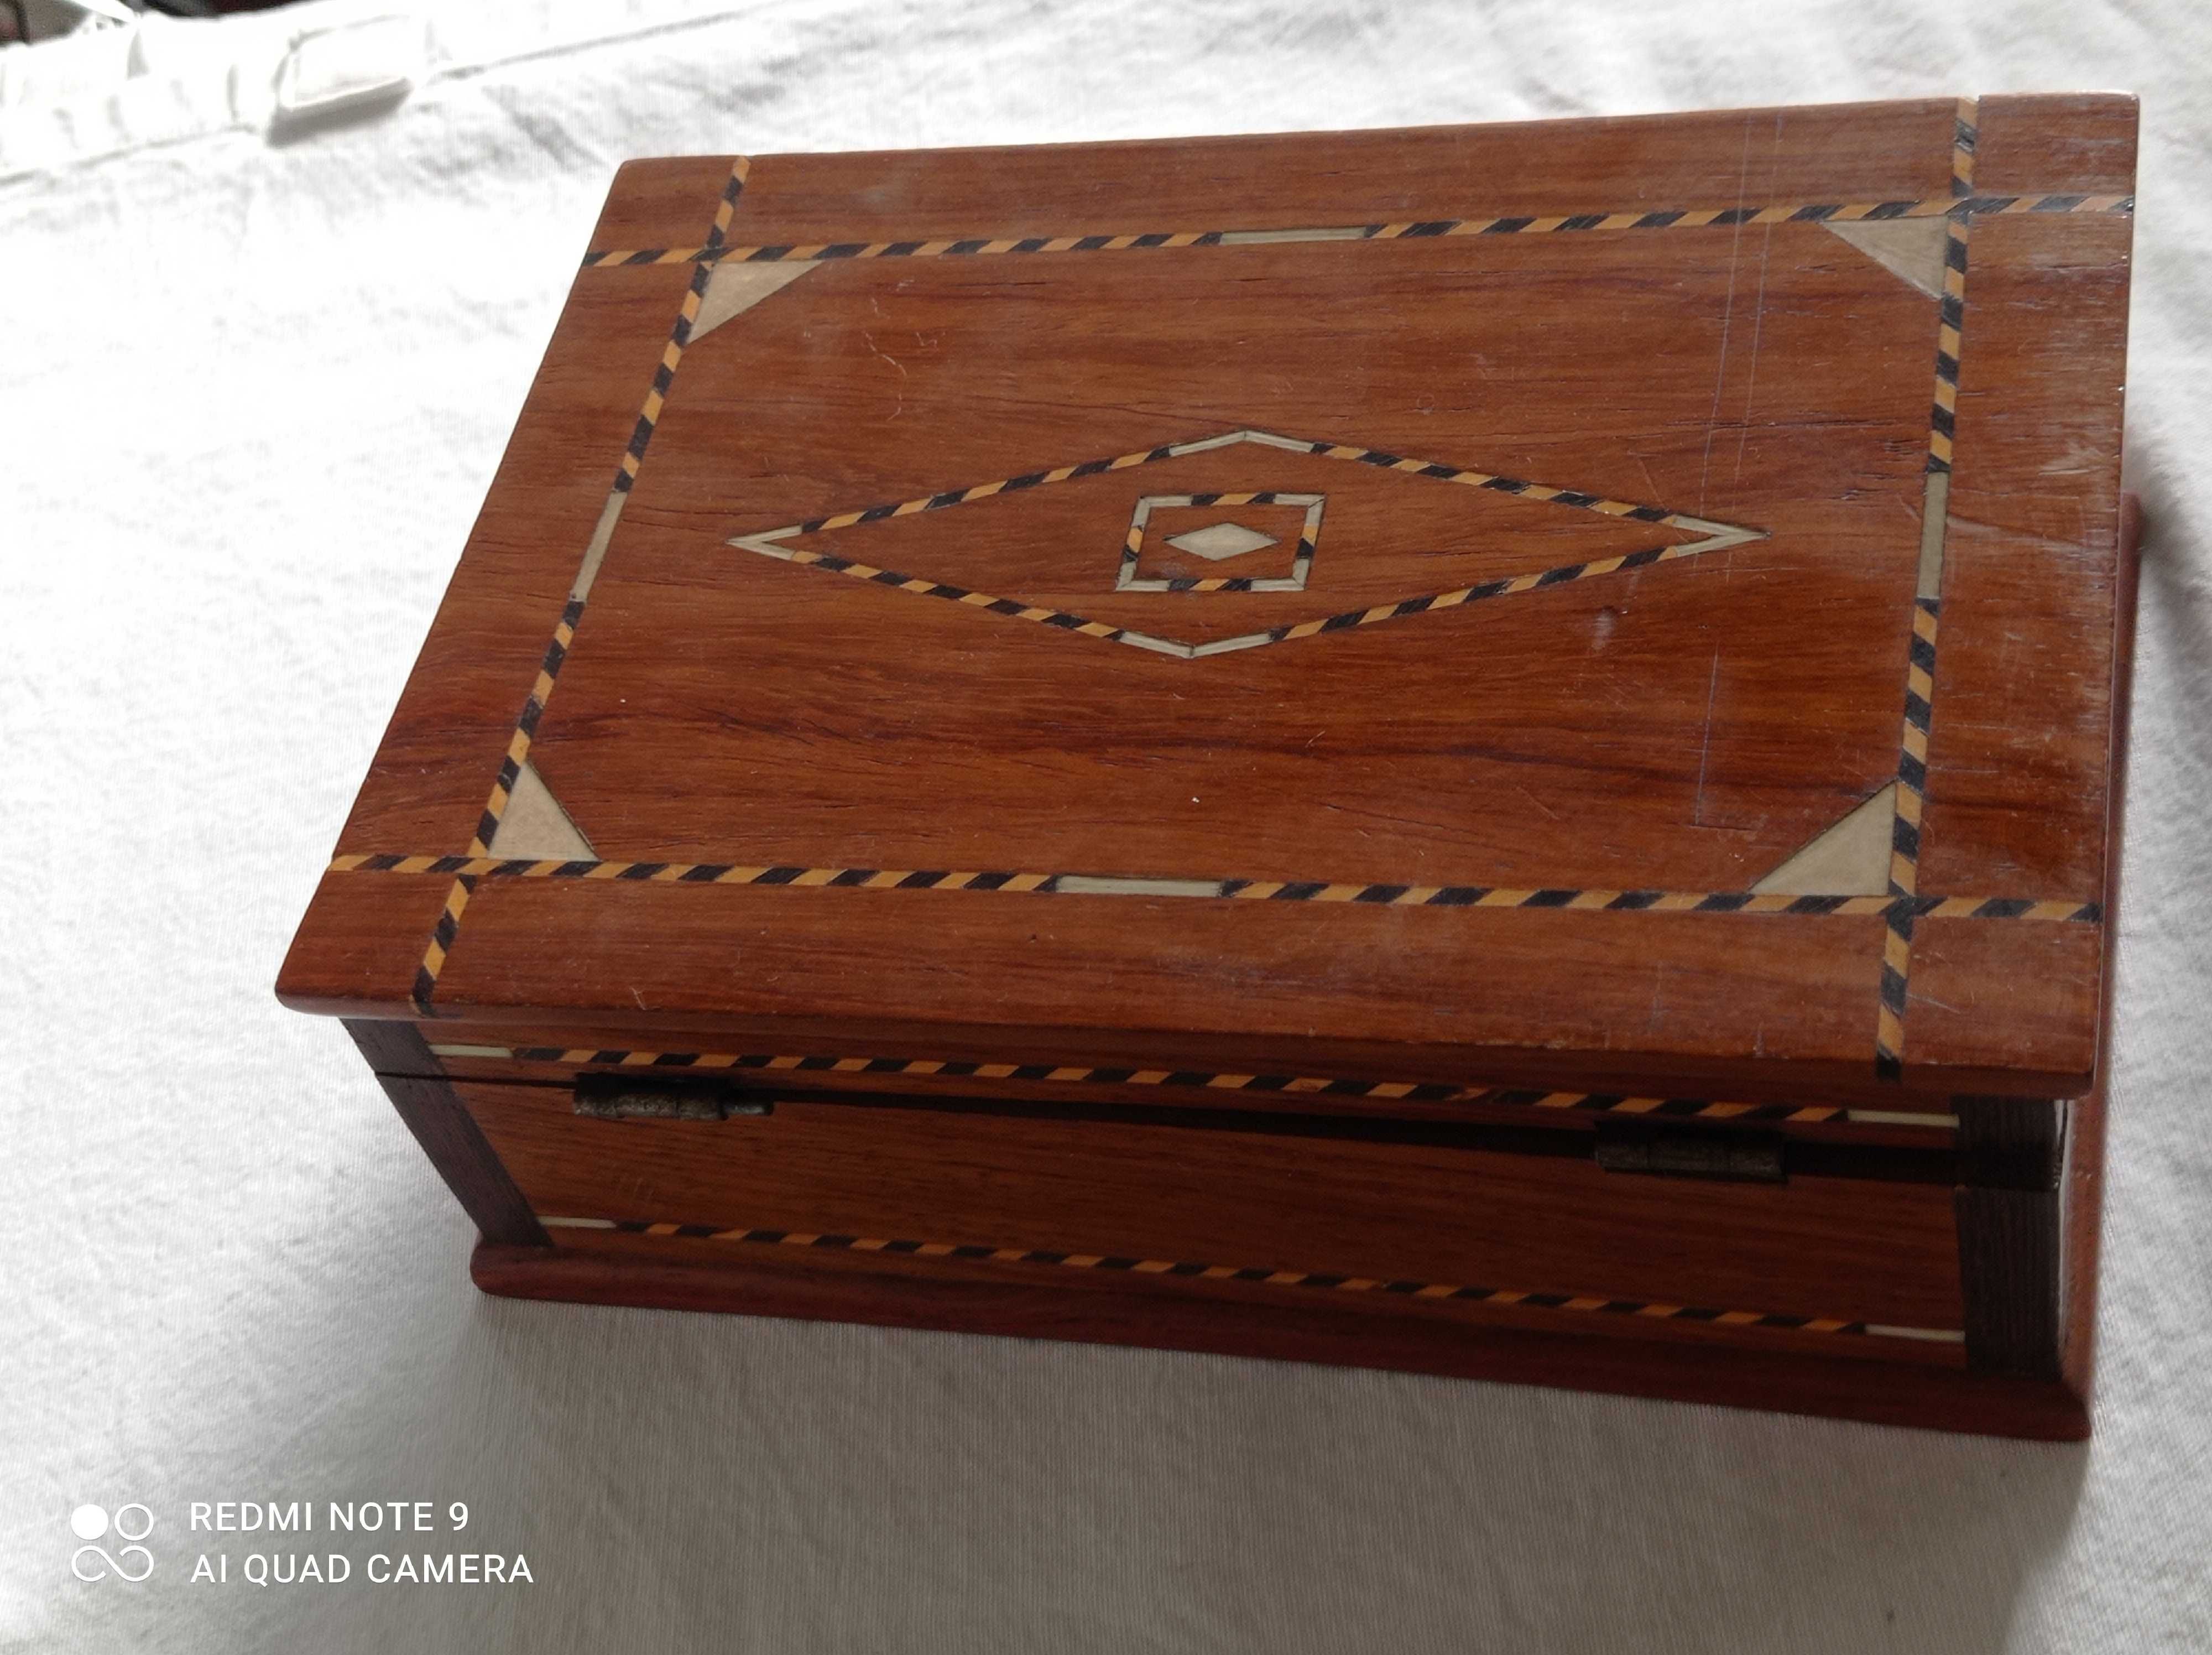 Caixa de madeira antiga com aplicações de madeiras diferentes